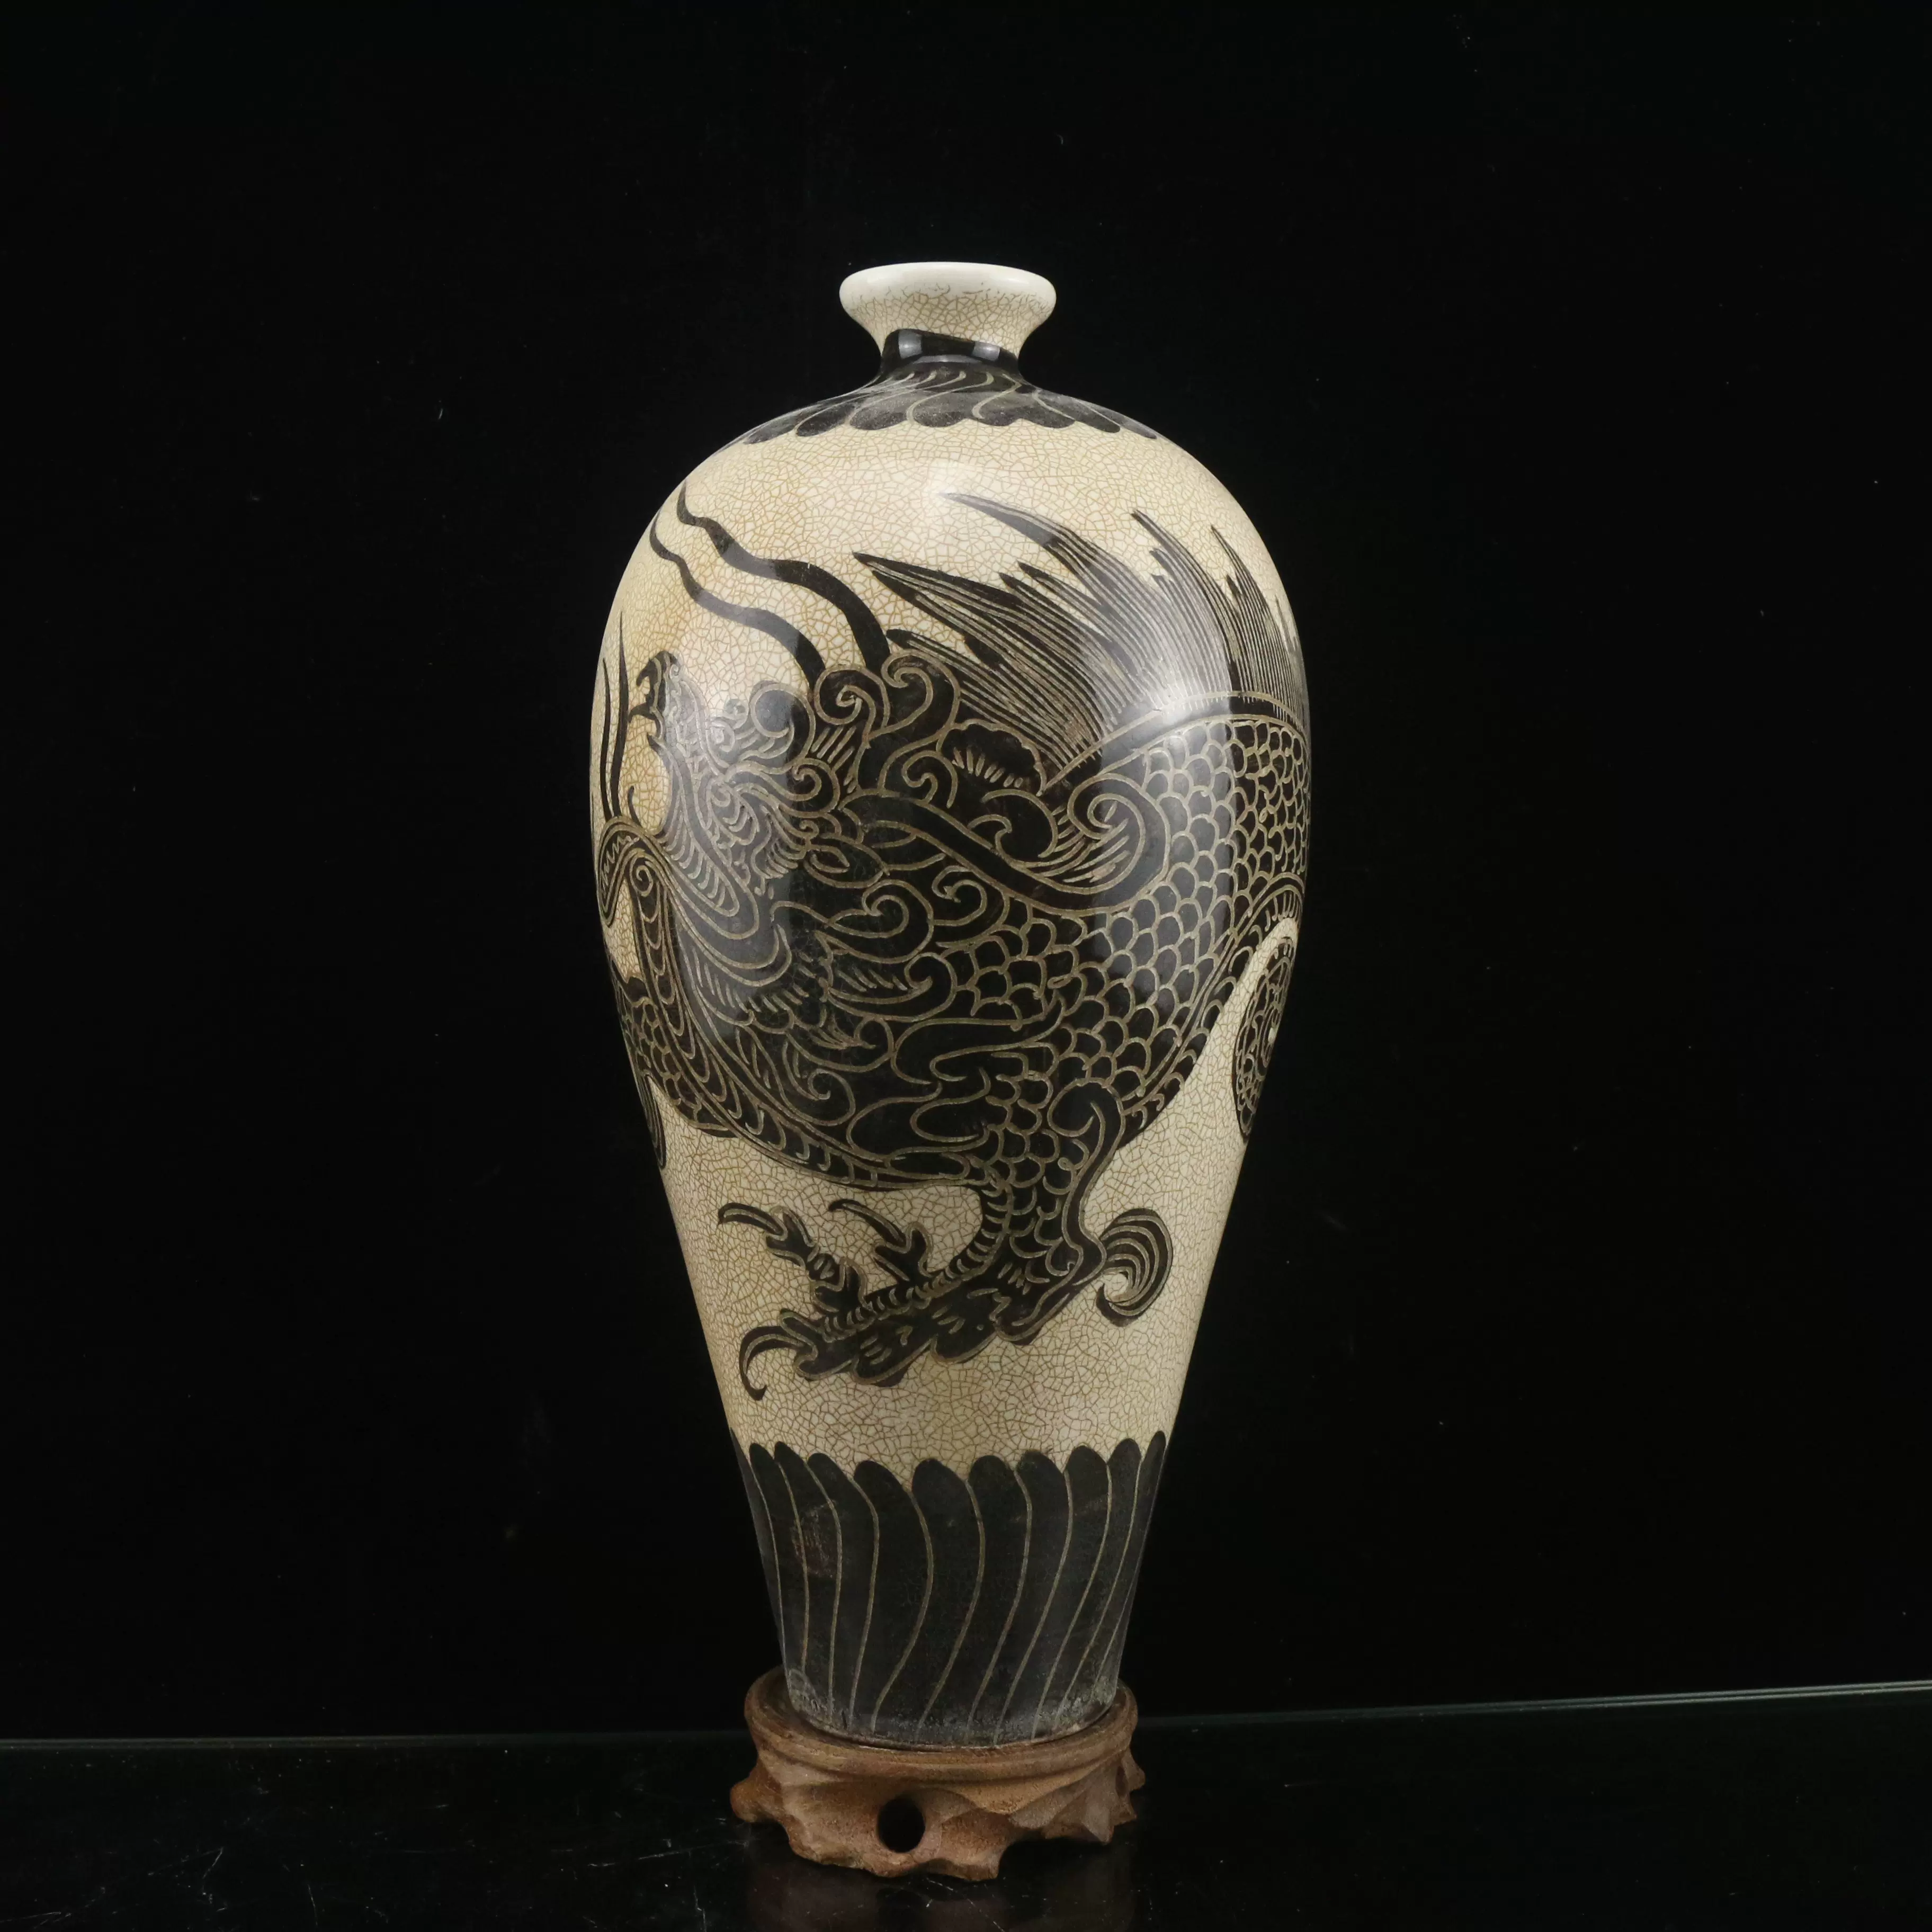 宋代磁州窯雕刻龍紋梅瓶仿古瓷器古董古玩舊貨老貨仿出土擺件-Taobao